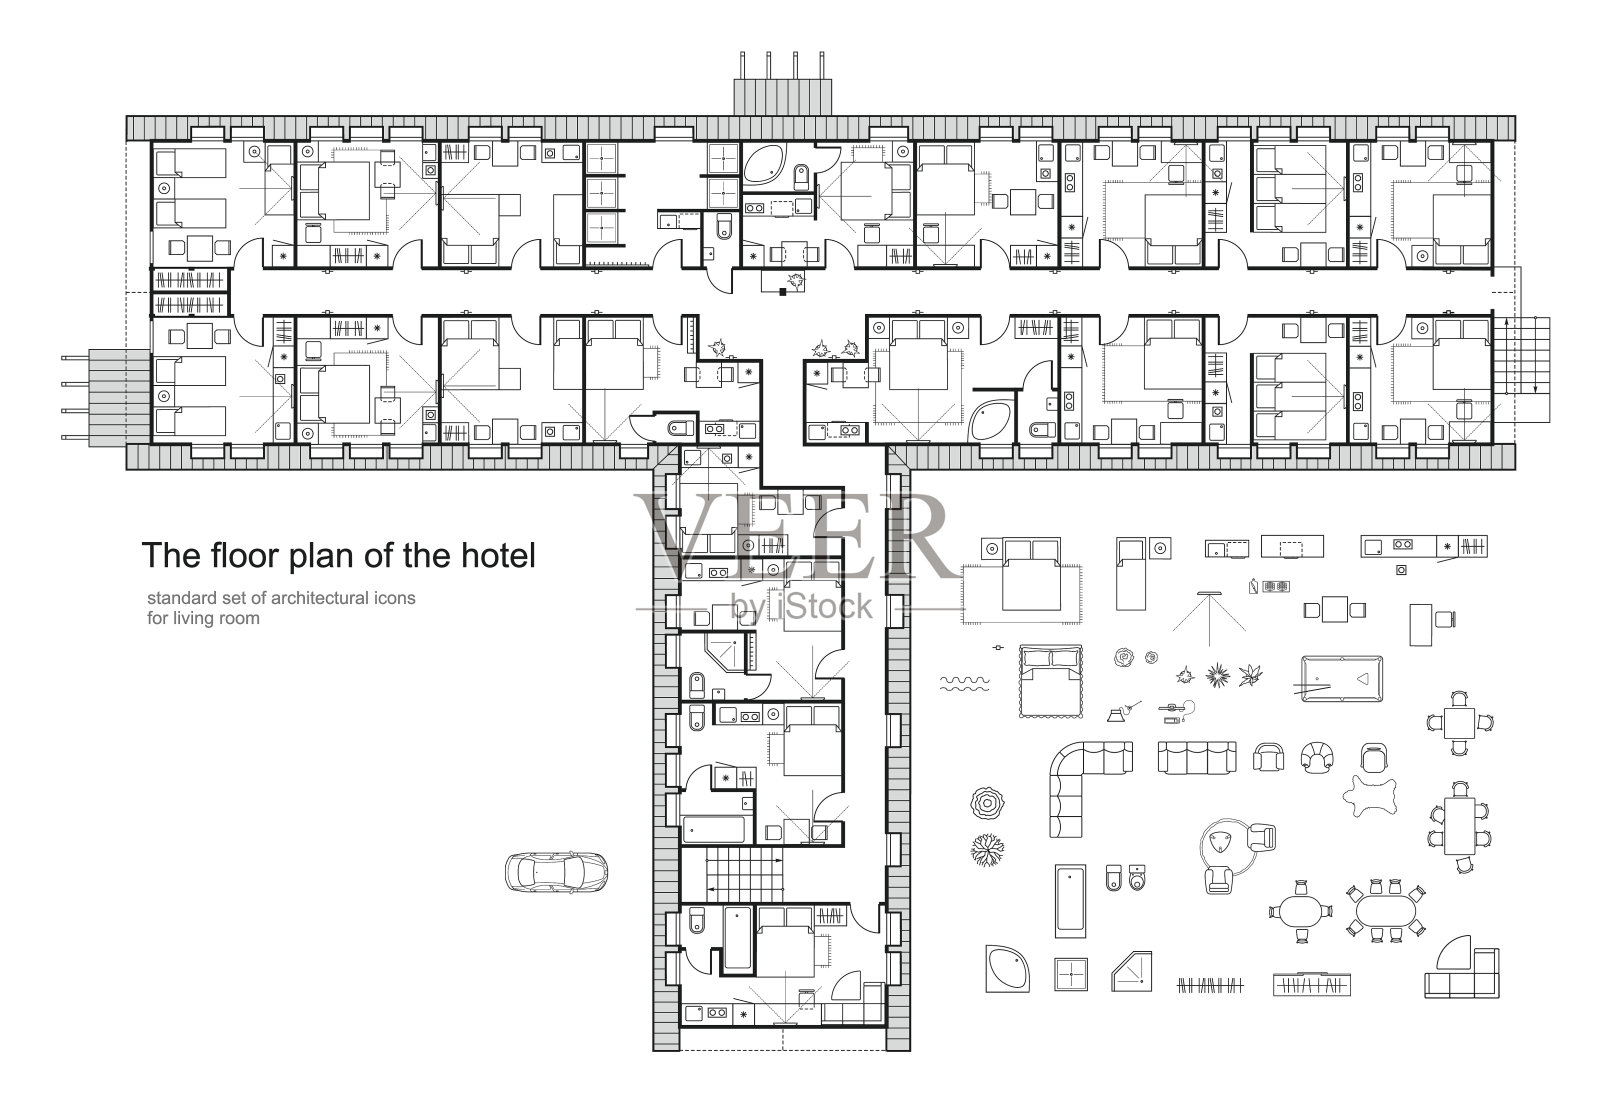 酒店的建筑平面图。标准家具符号集。插画图片素材